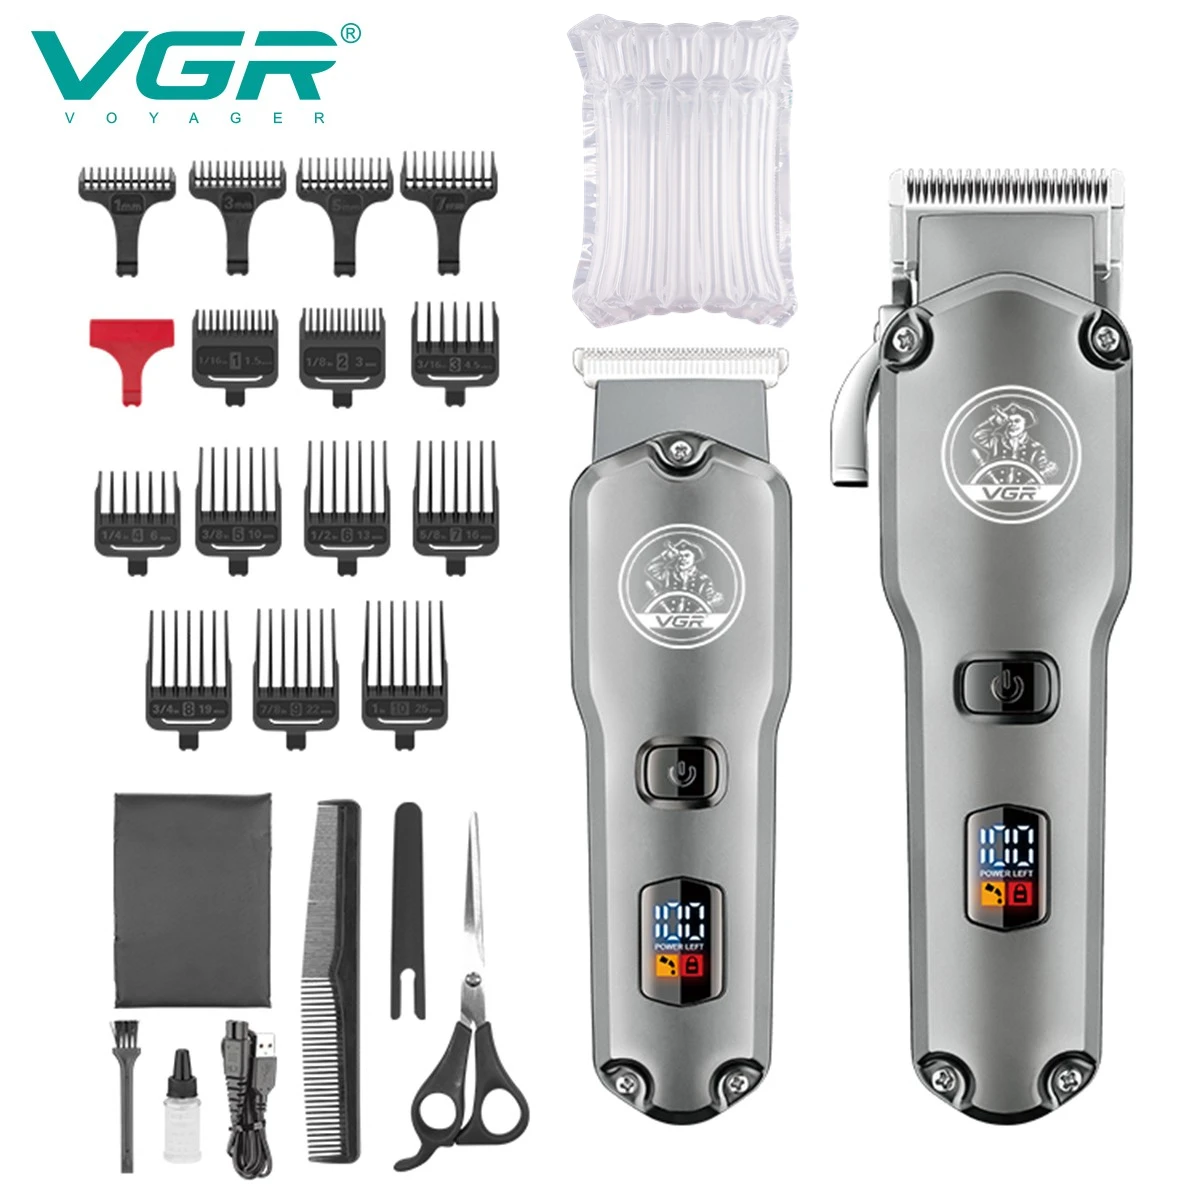 VGR Haarspange Wasserdicht Maschine zum Haare schneiden Einstellbar  Haarschnitt Elektrisch Haarschneider Digitalanzeige Clipper für Männer  V-675 _ - AliExpress Mobile